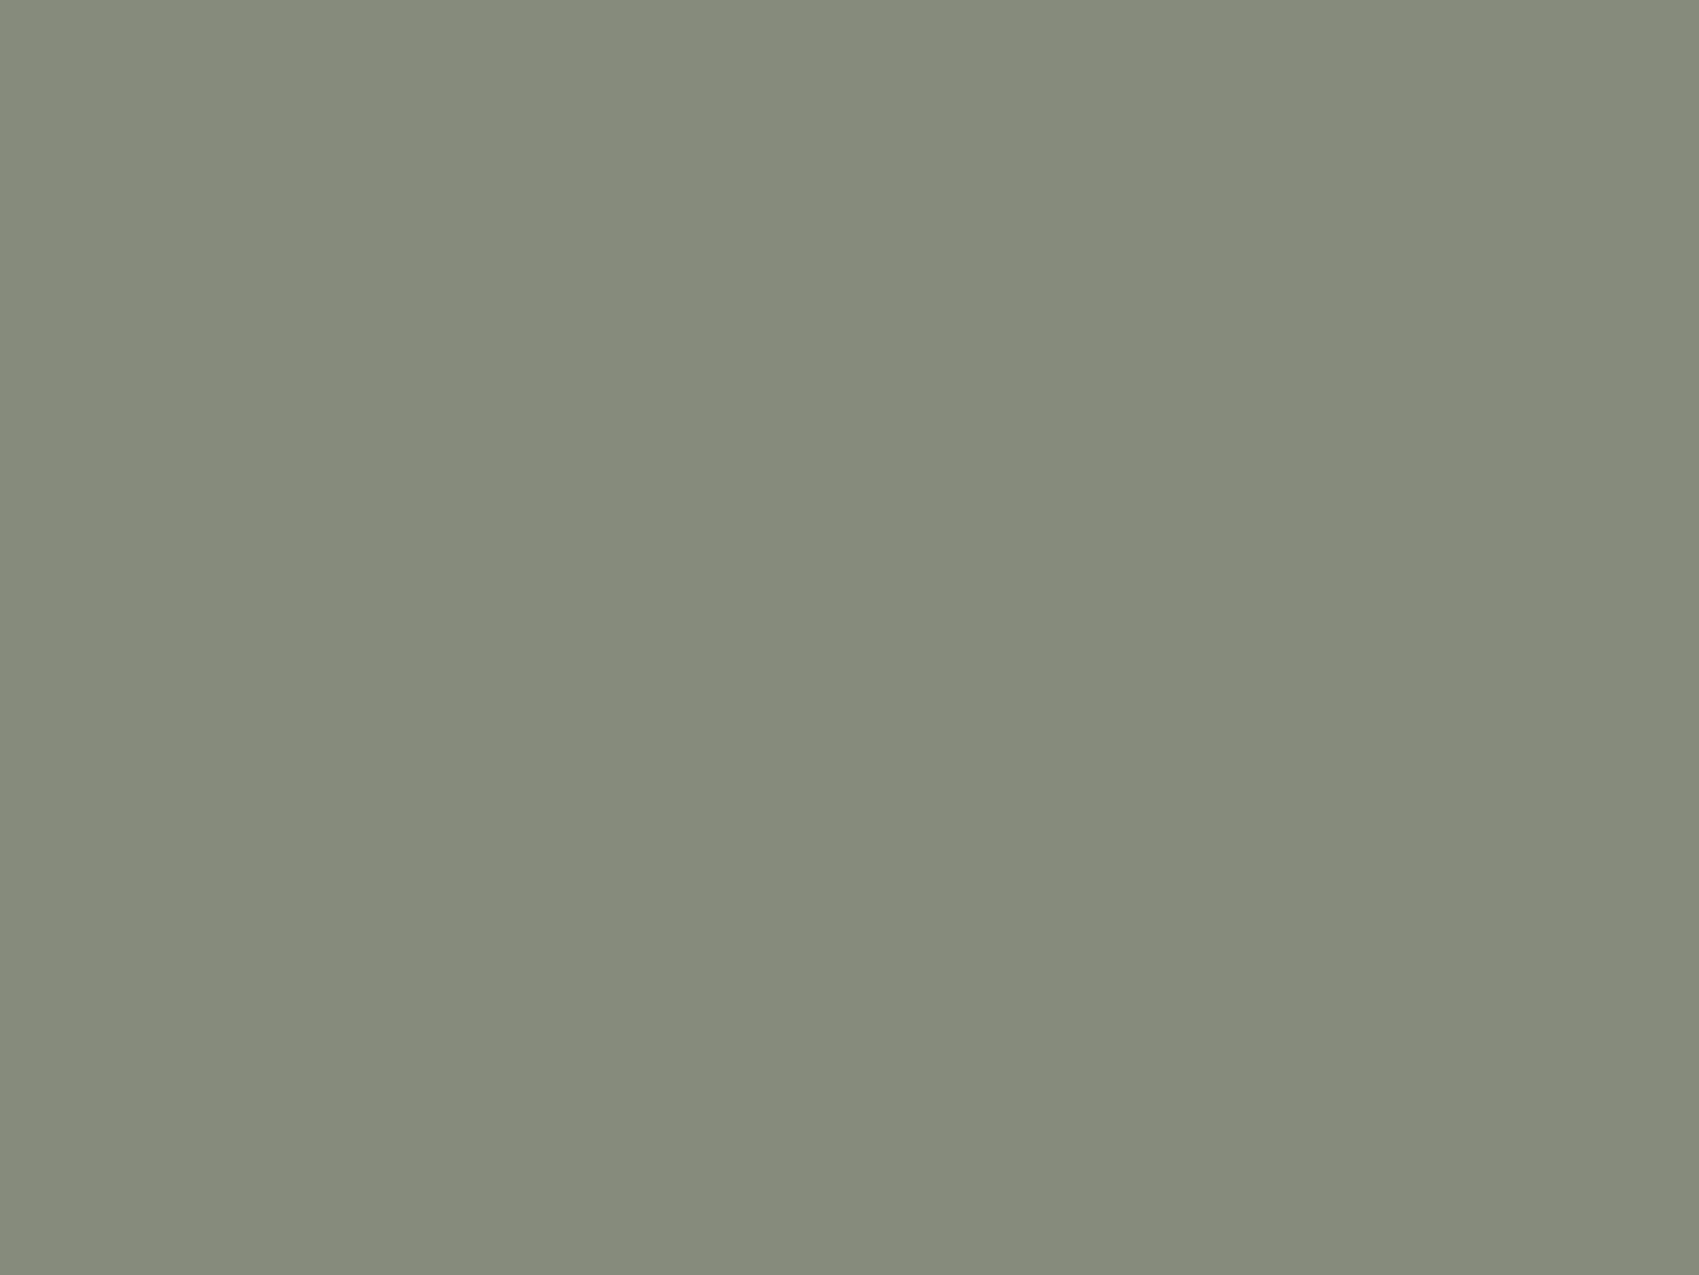 Илларион Прянишников. Крестный ход (фрагмент). 1893. Государственный Русский музей, Санкт-Петербург